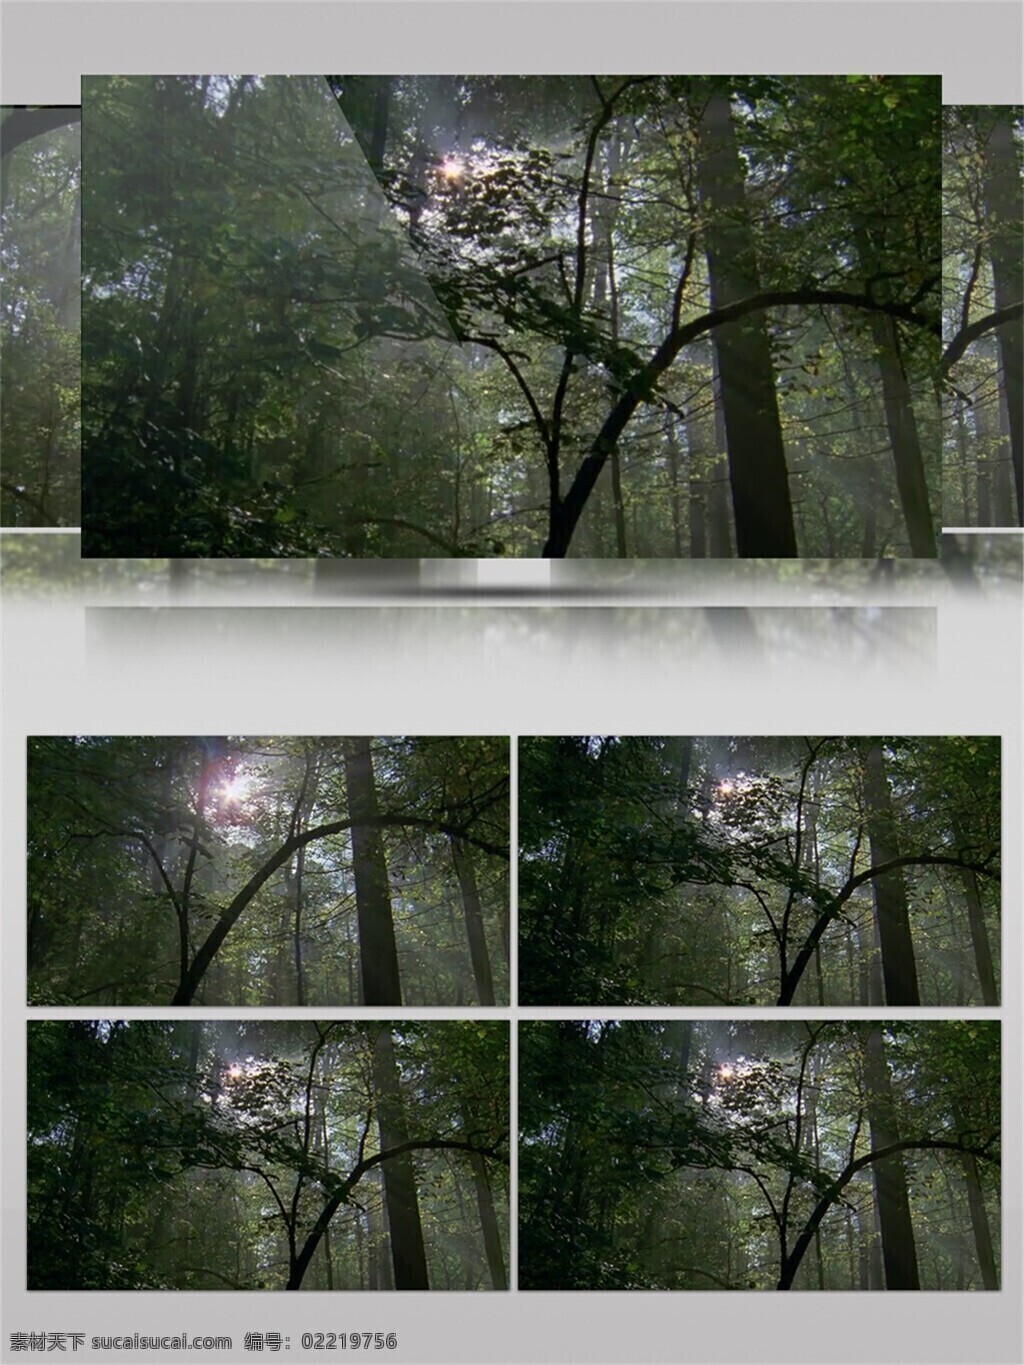 阳光 穿越 森林 视频 音效 视频素材 成长 健康 绿色植物 自然景色 视频音效 茂密